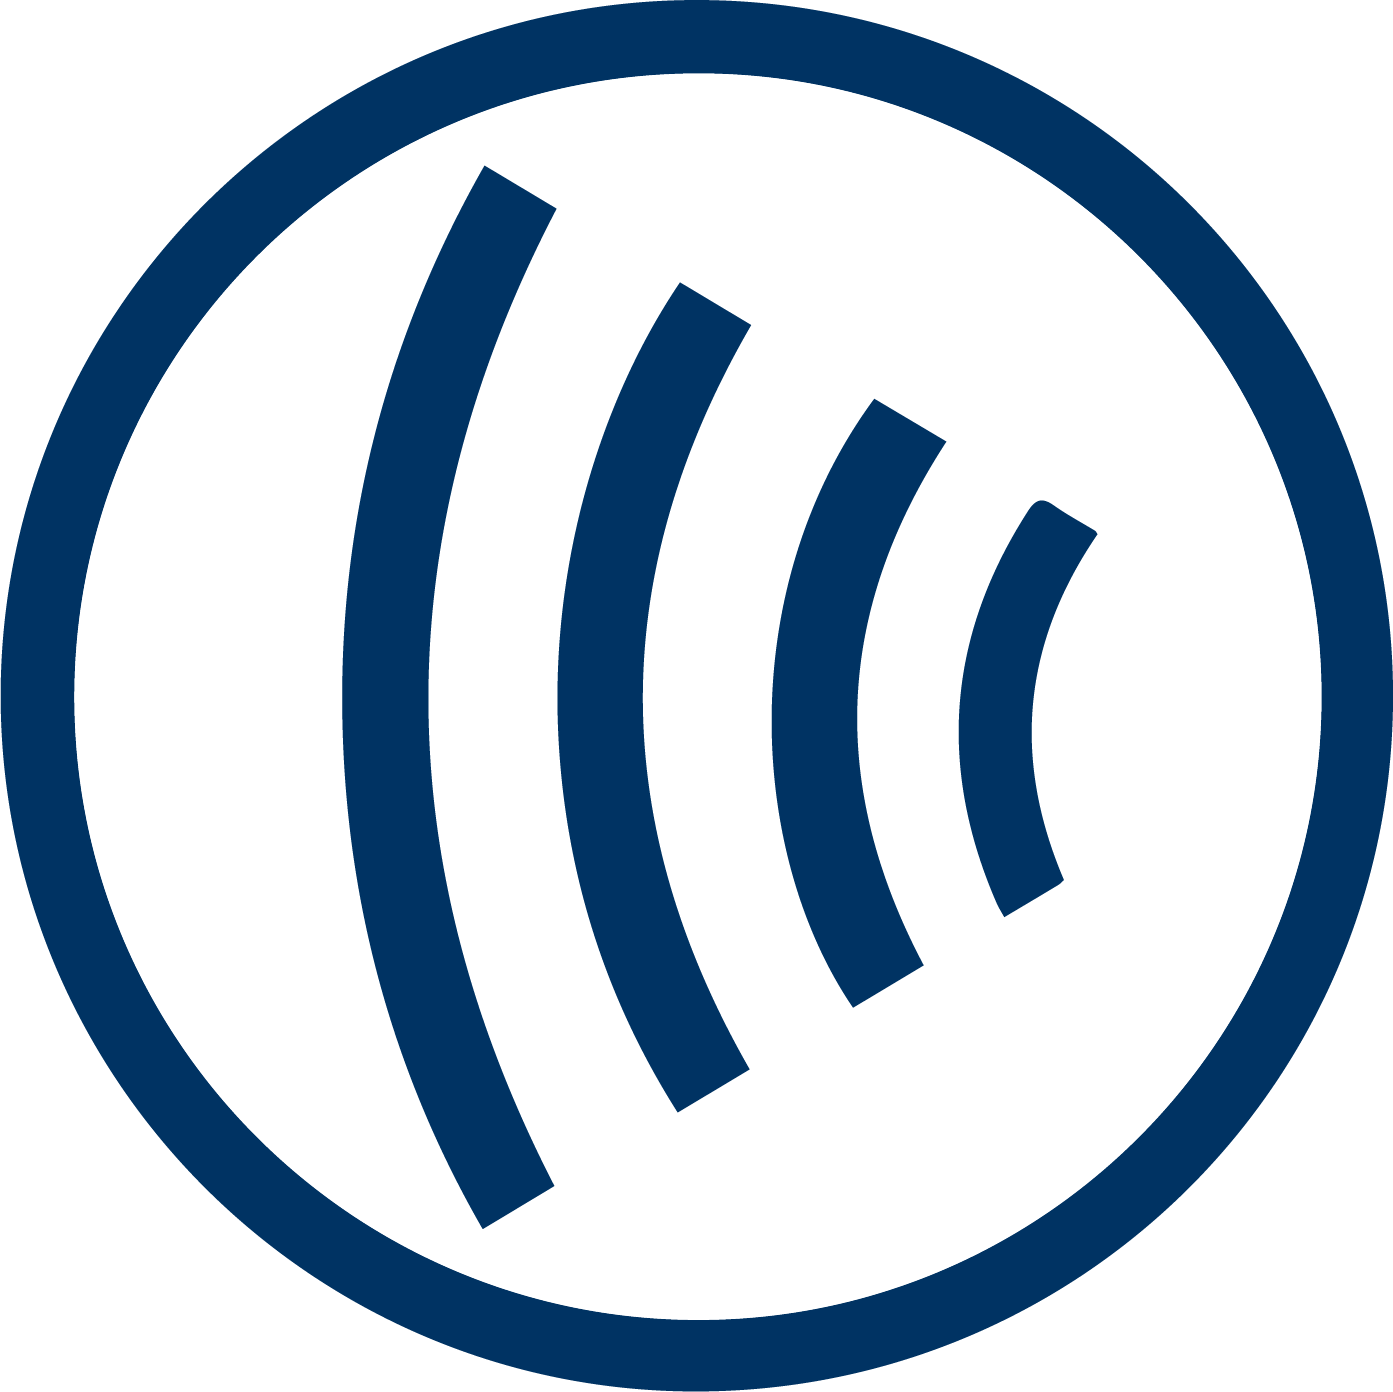 Ikonka symbolizująca głośnik: kreski oznaczające fale w kółku.